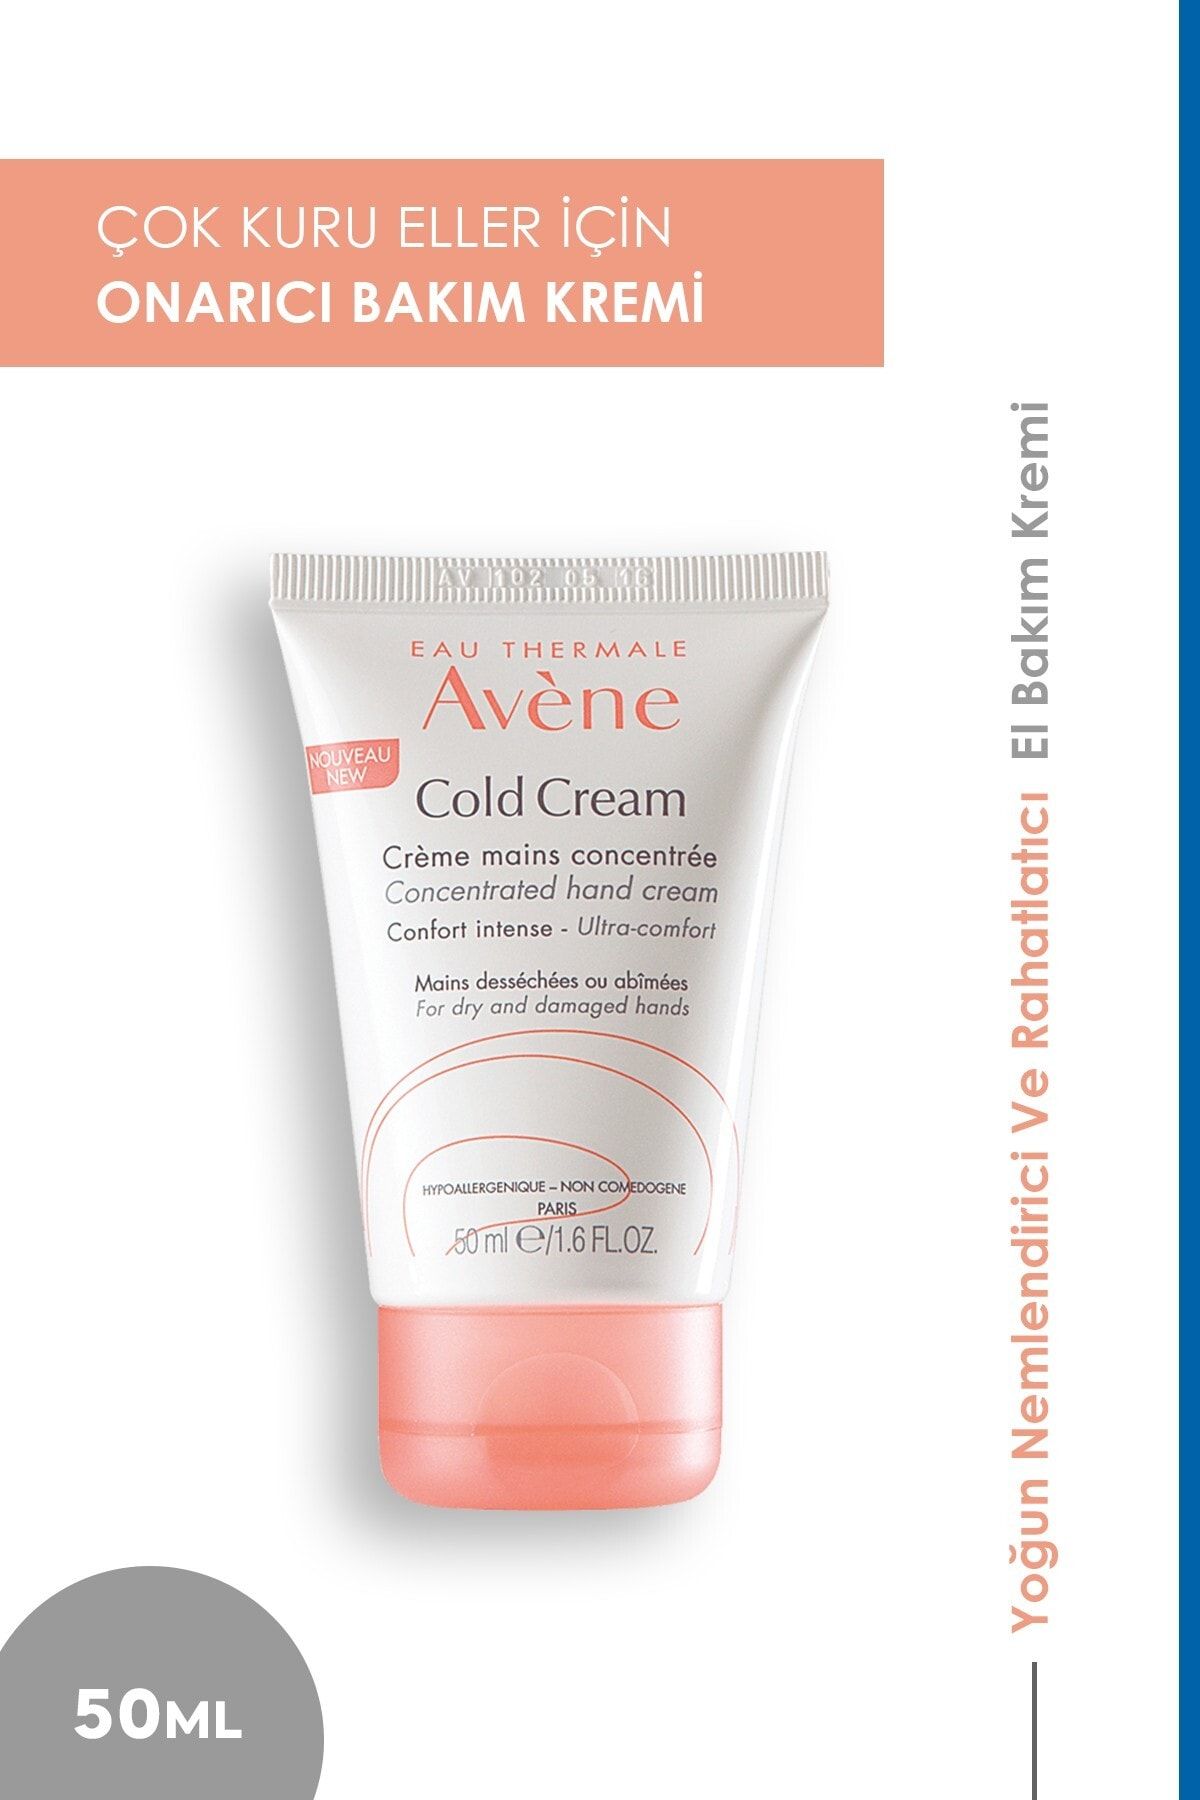 Avene Kuru Eller için Bakım Kremi - Cold Cream Creme Mains 50 ml 3282770072815